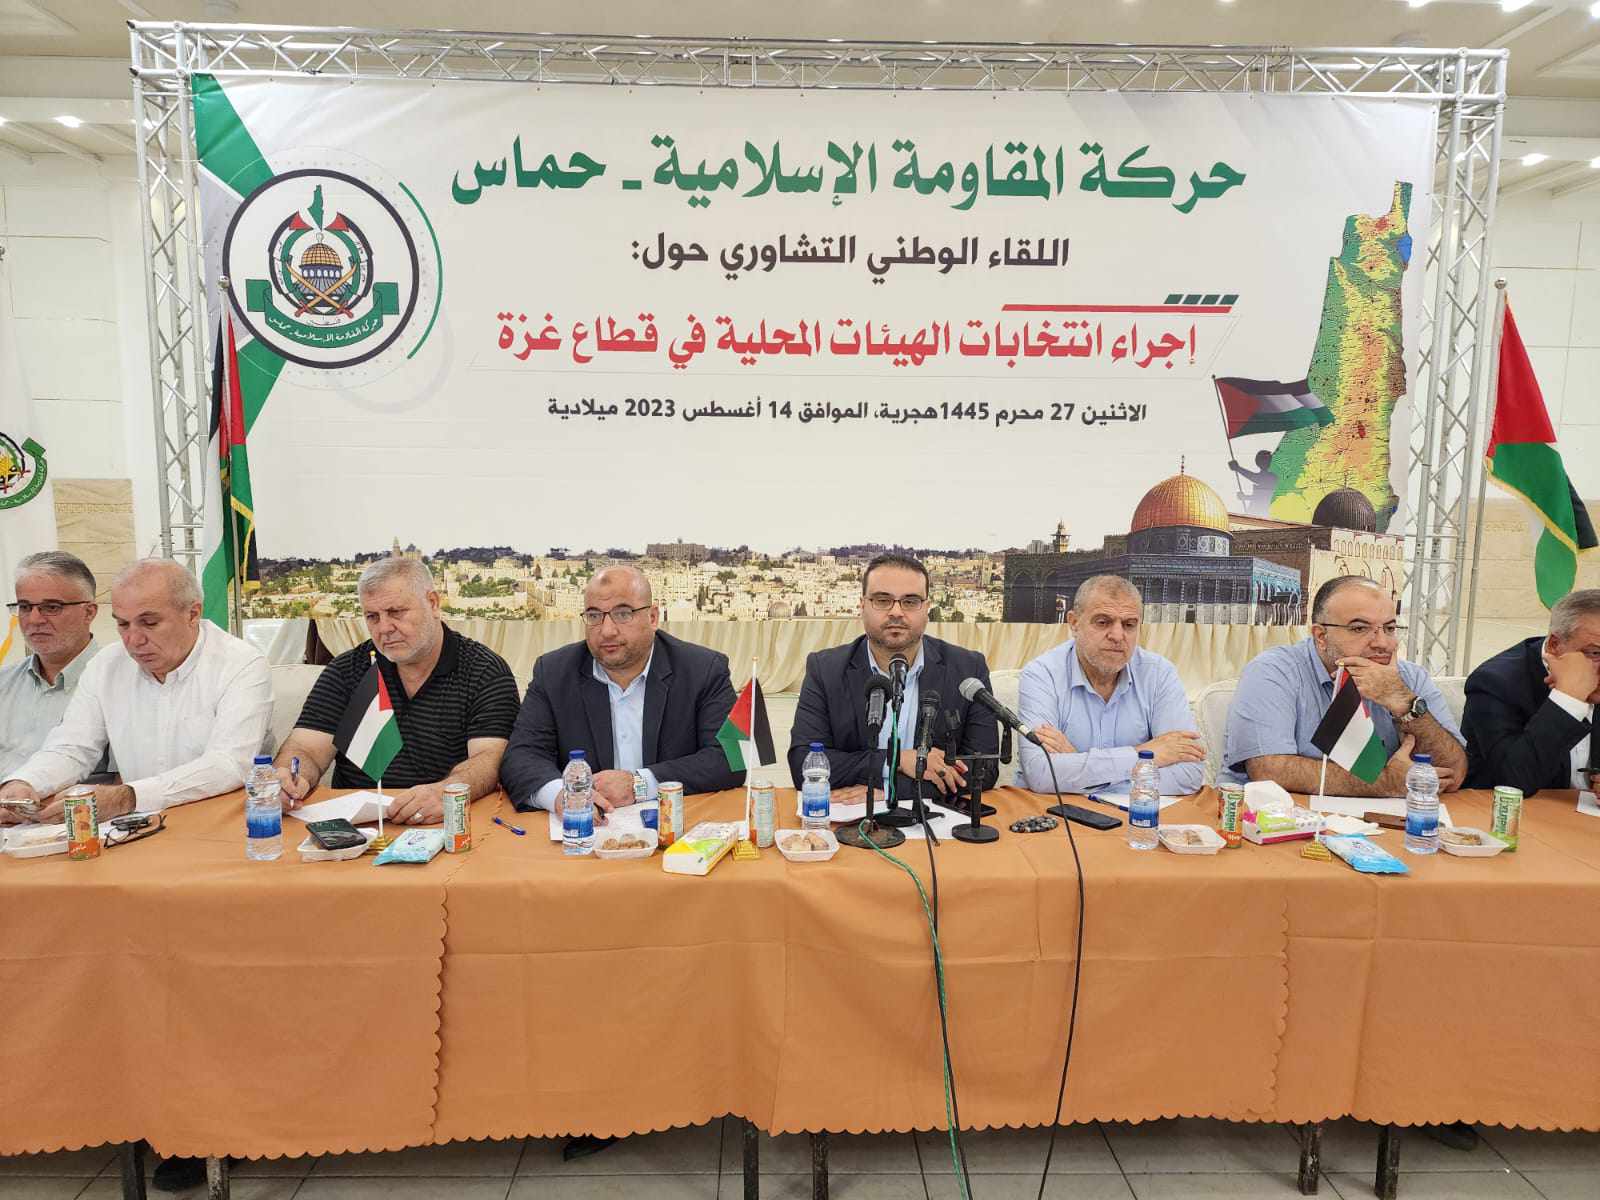 أبو معمر: حريصون أن تكون الانتخابات المحلية بغزة خطوة نحو تحقيق الشراكة وتقدم المصالحة